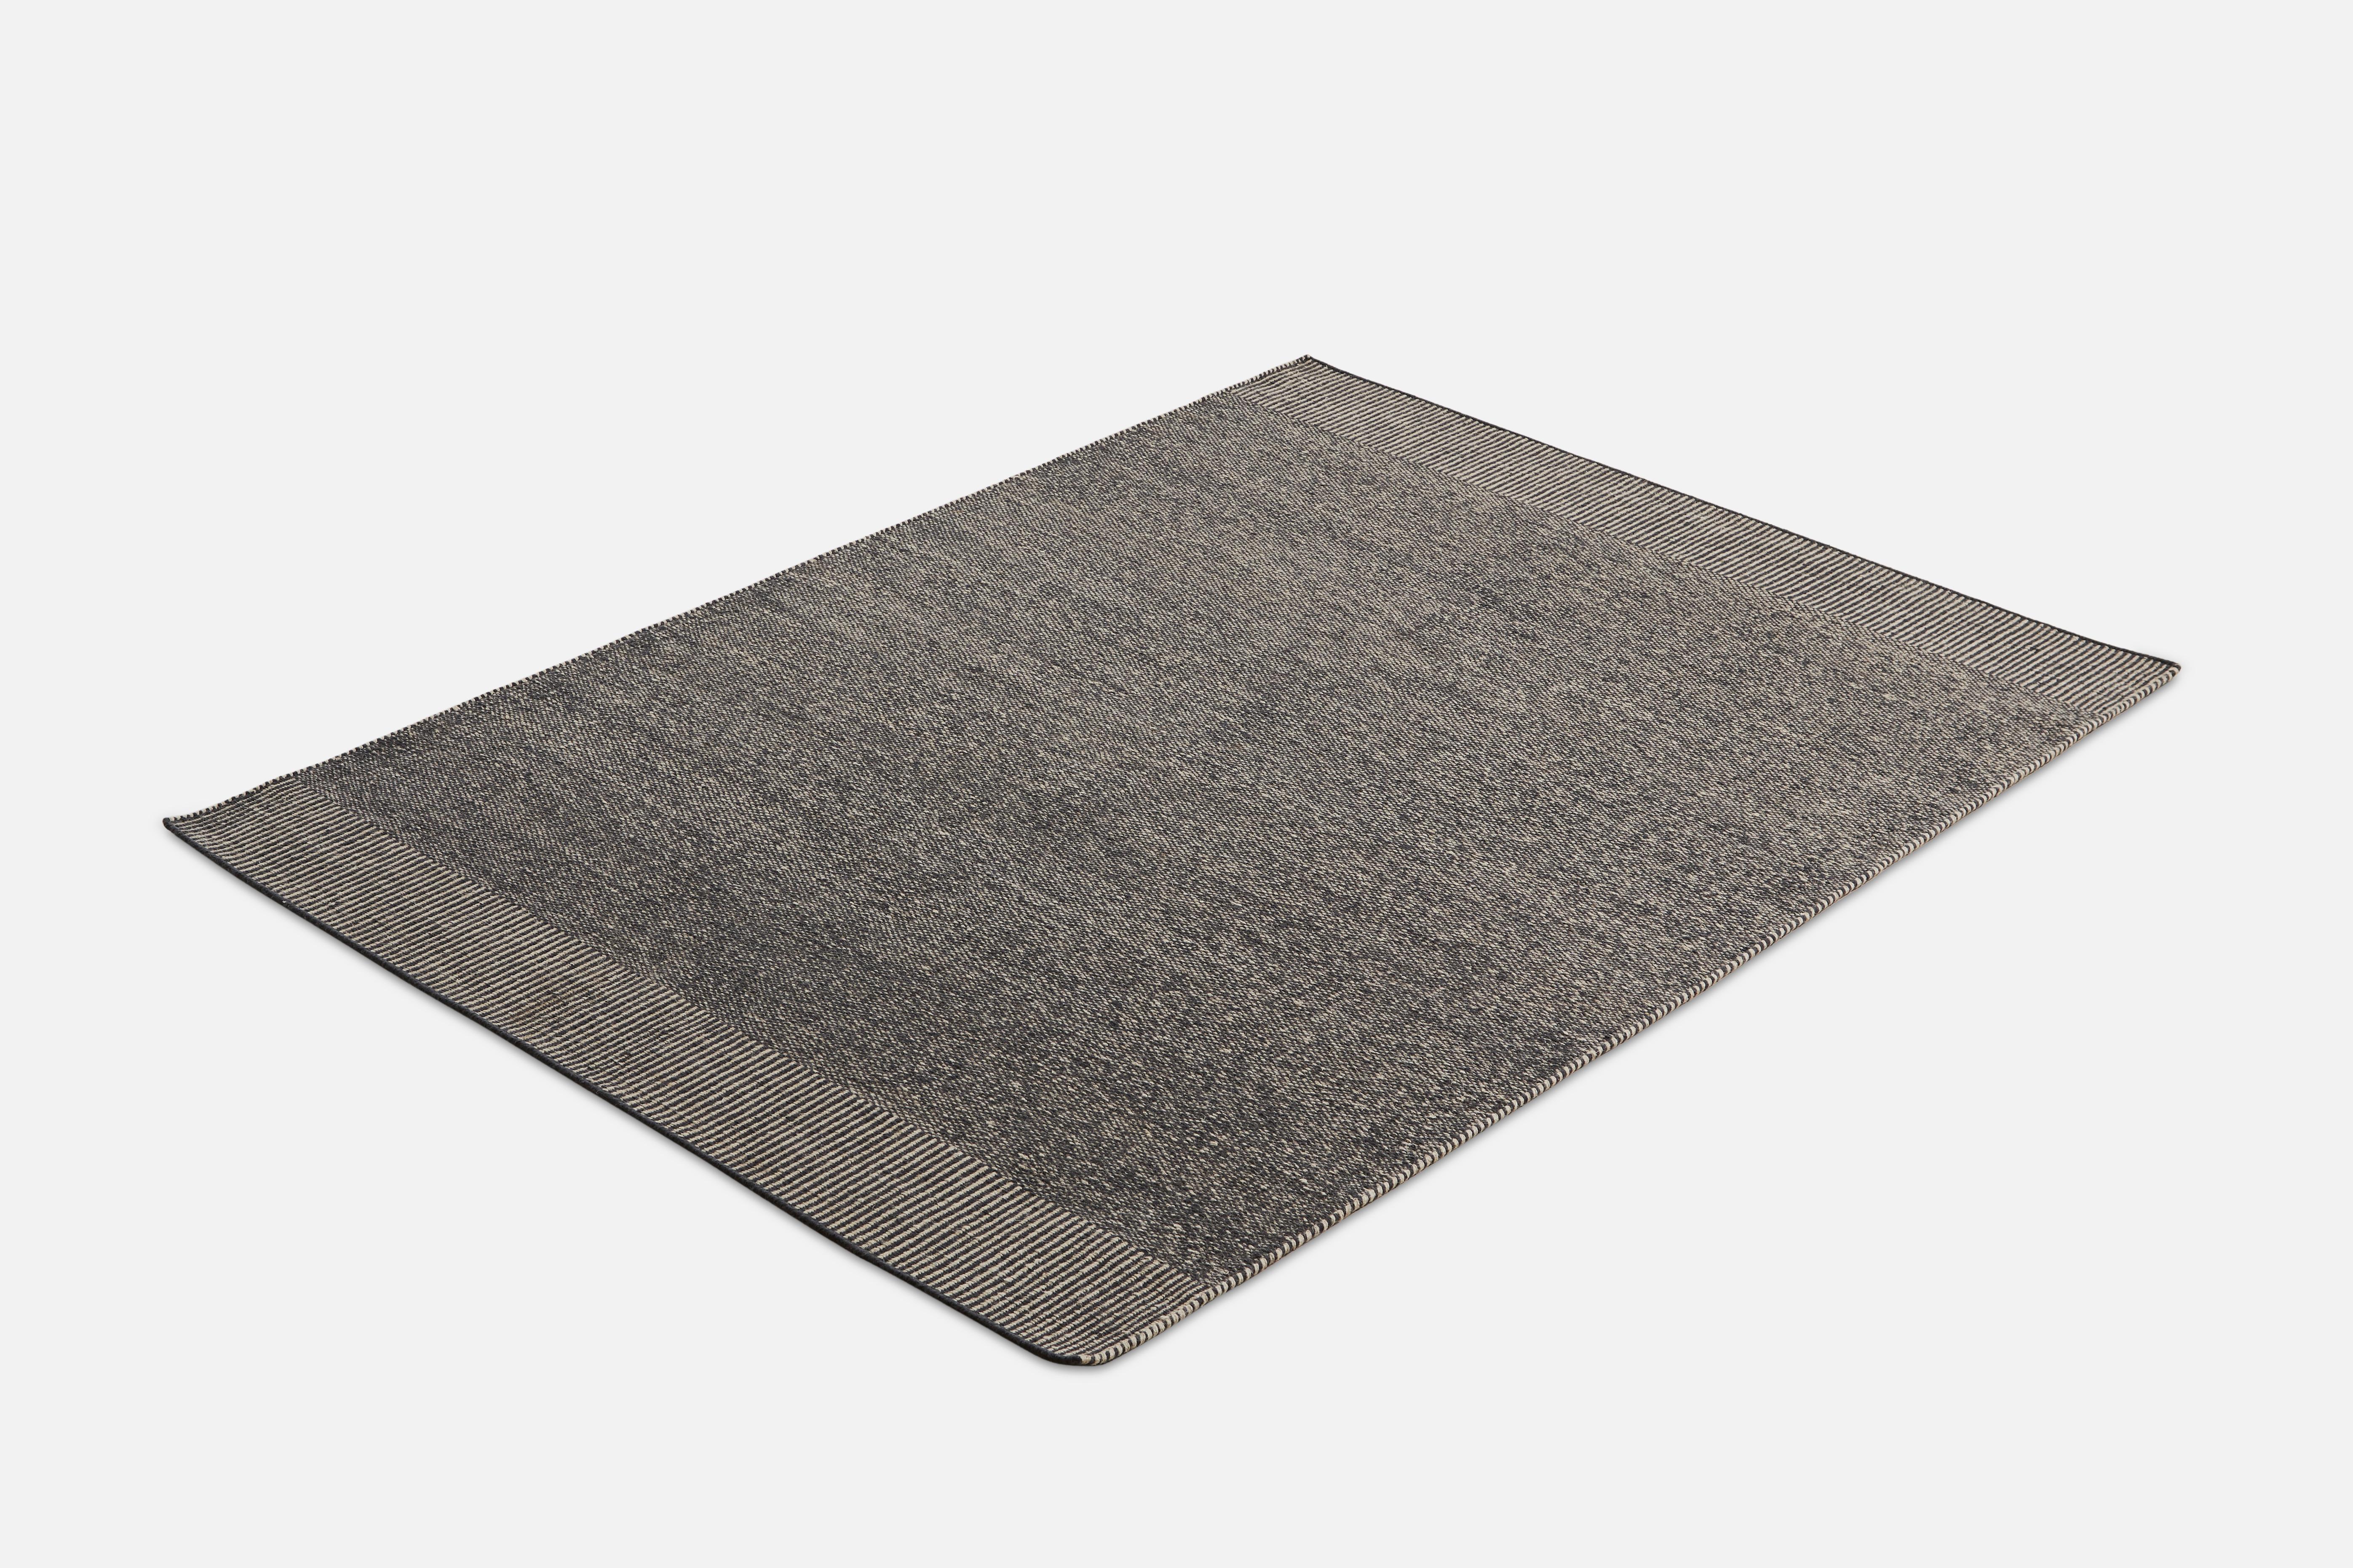 Rombo-Teppich in Grau von Studio MLR
MATERIALIEN: 65% Wolle, 35% Jute.
Abmessungen: B 170 x L 240 cm
Erhältlich in 3 Größen: B90 x L140, B170 x L240, B75 x L200 cm.
Erhältlich in Grau, Moosgrün und Rost.

Rombo zeichnet sich durch die Materialien